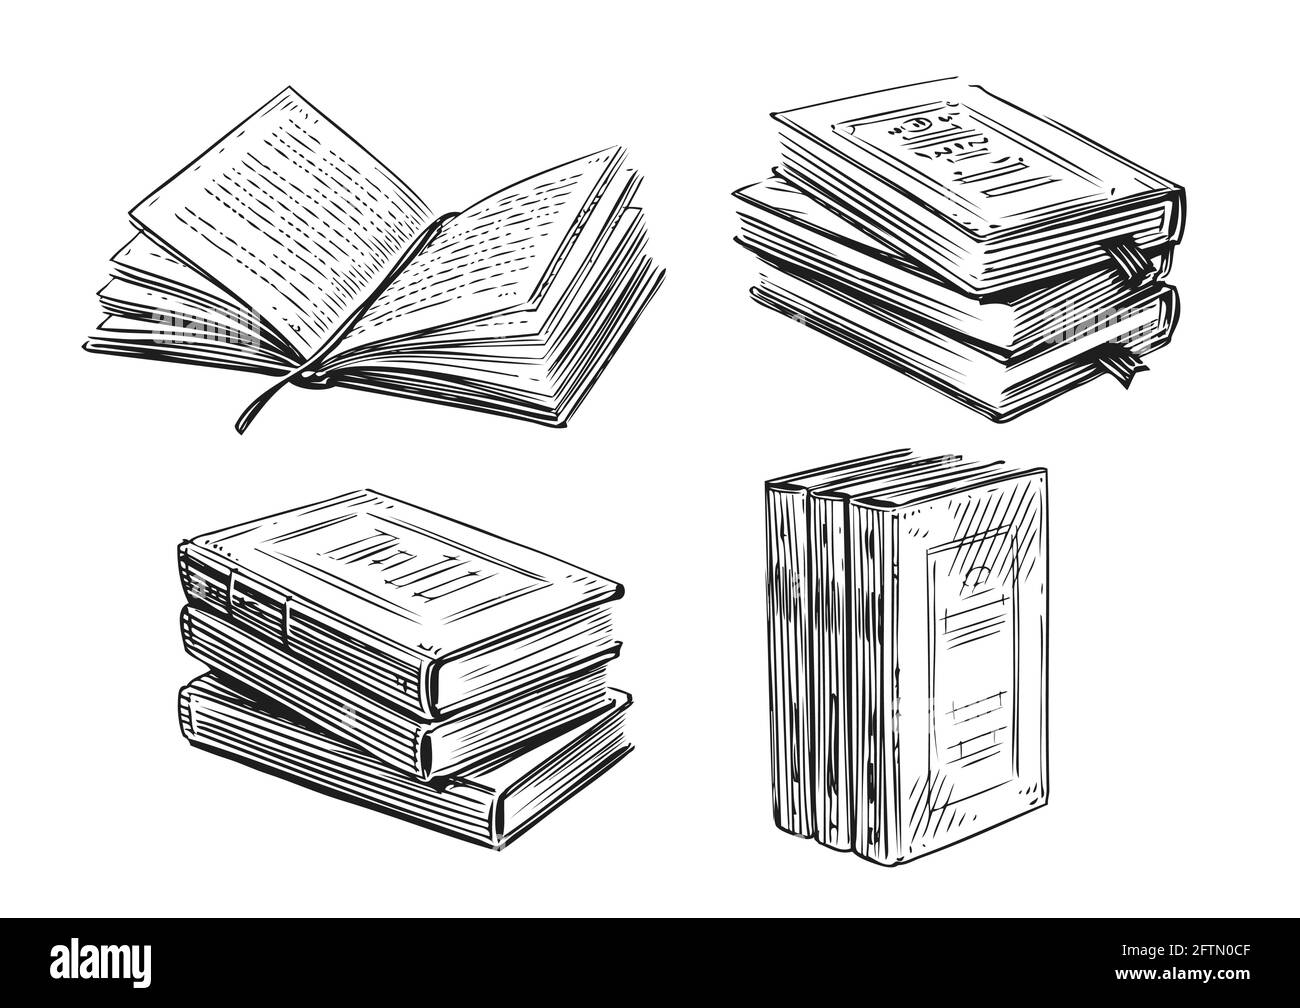 Esquisse de livres. Littérature, concept de bibliothèque dans un style vintage. Éléments de conception vectoriels dessinés à la main Illustration de Vecteur